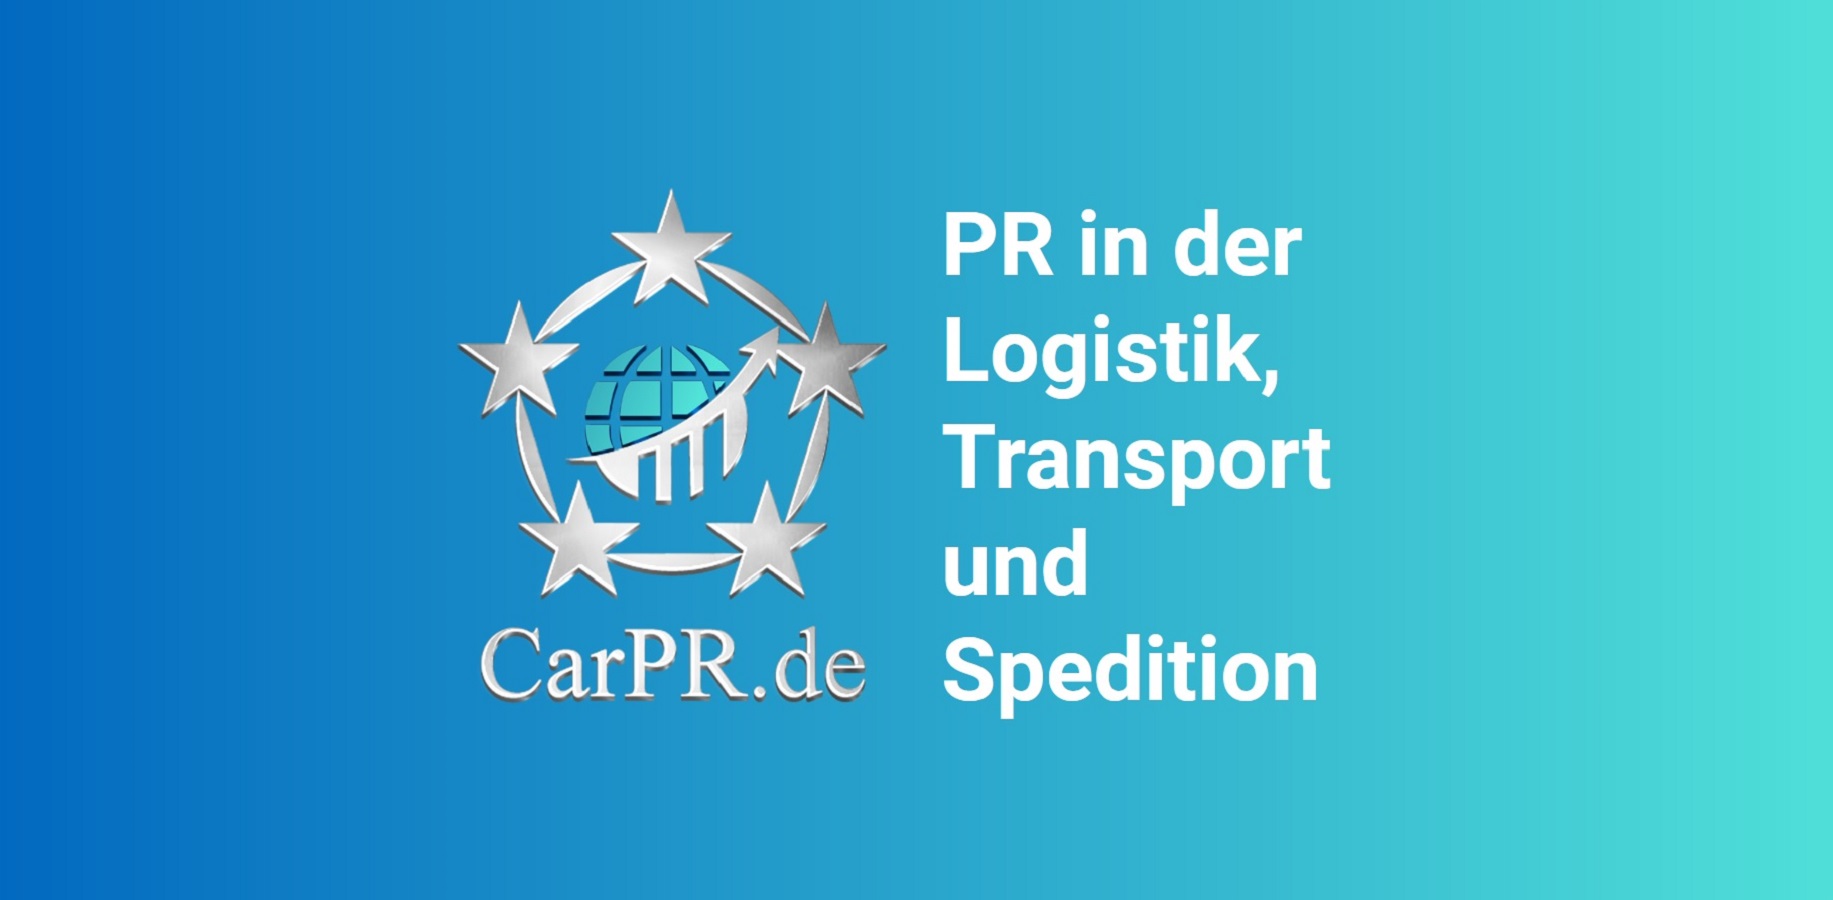 CarPR bringt die PR in Logistik, Transport und Verkehr nach vorn